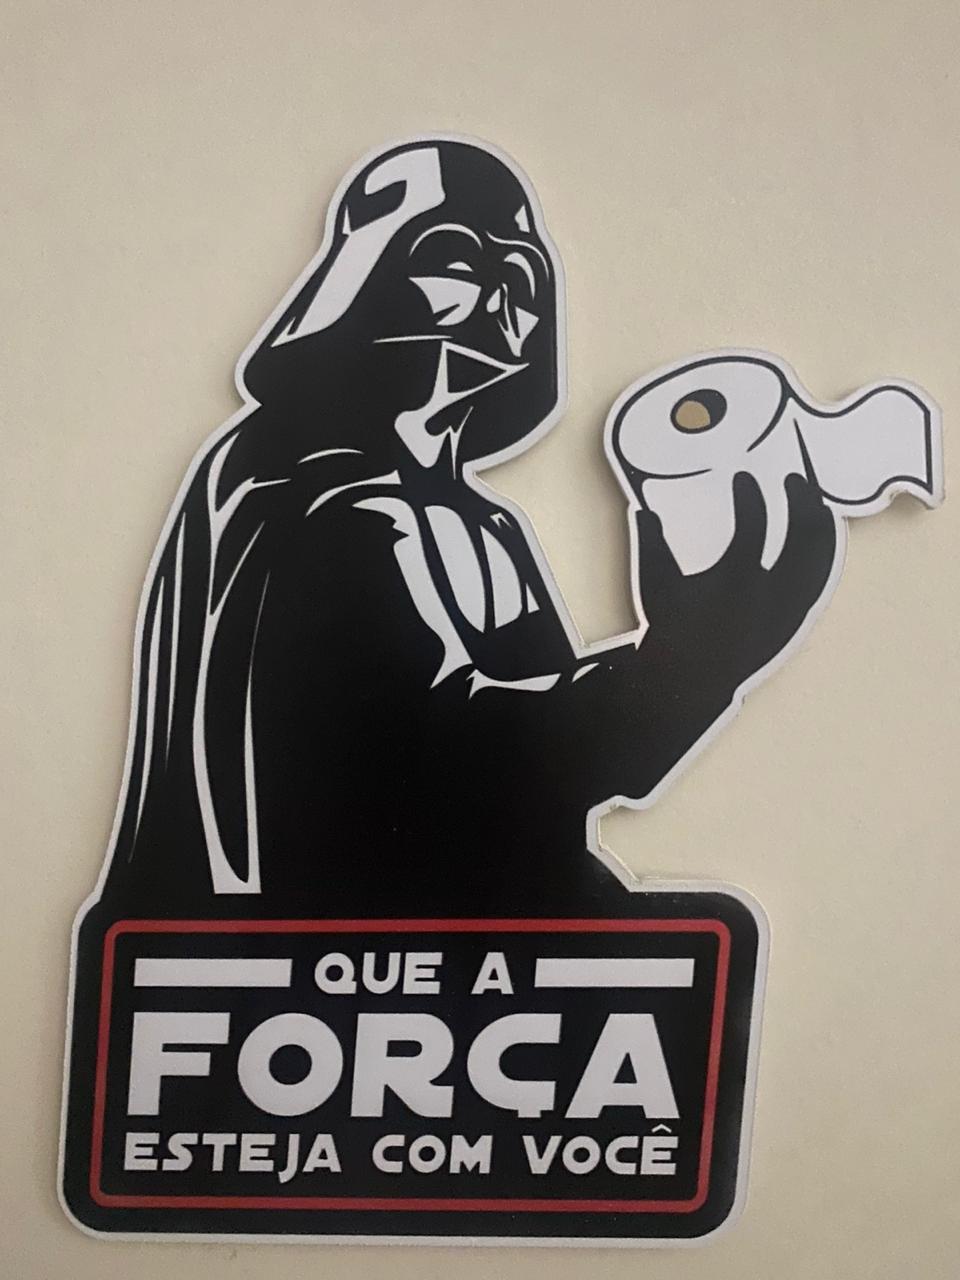 Placa Decorativa Darth Vader "Que a Força esteja com você" - Star Wars